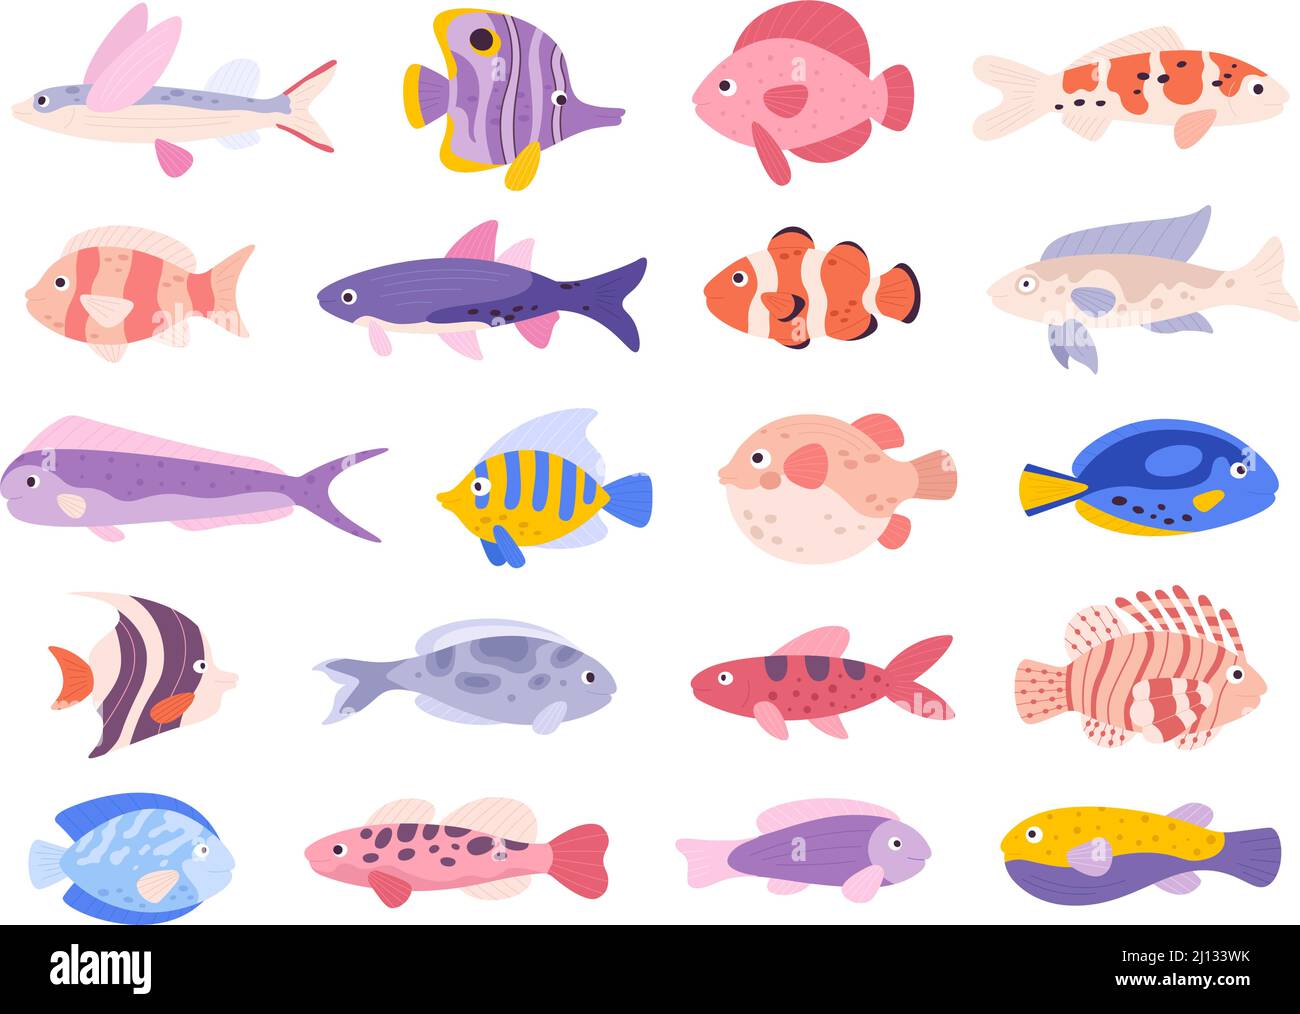 Dessin animé décoratif poissons de mer tropicaux corail pour aquarium. Clown, lion, ange, guppy et poisson volant. Ensemble de vecteurs exotiques d'océan pour animaux Illustration de Vecteur